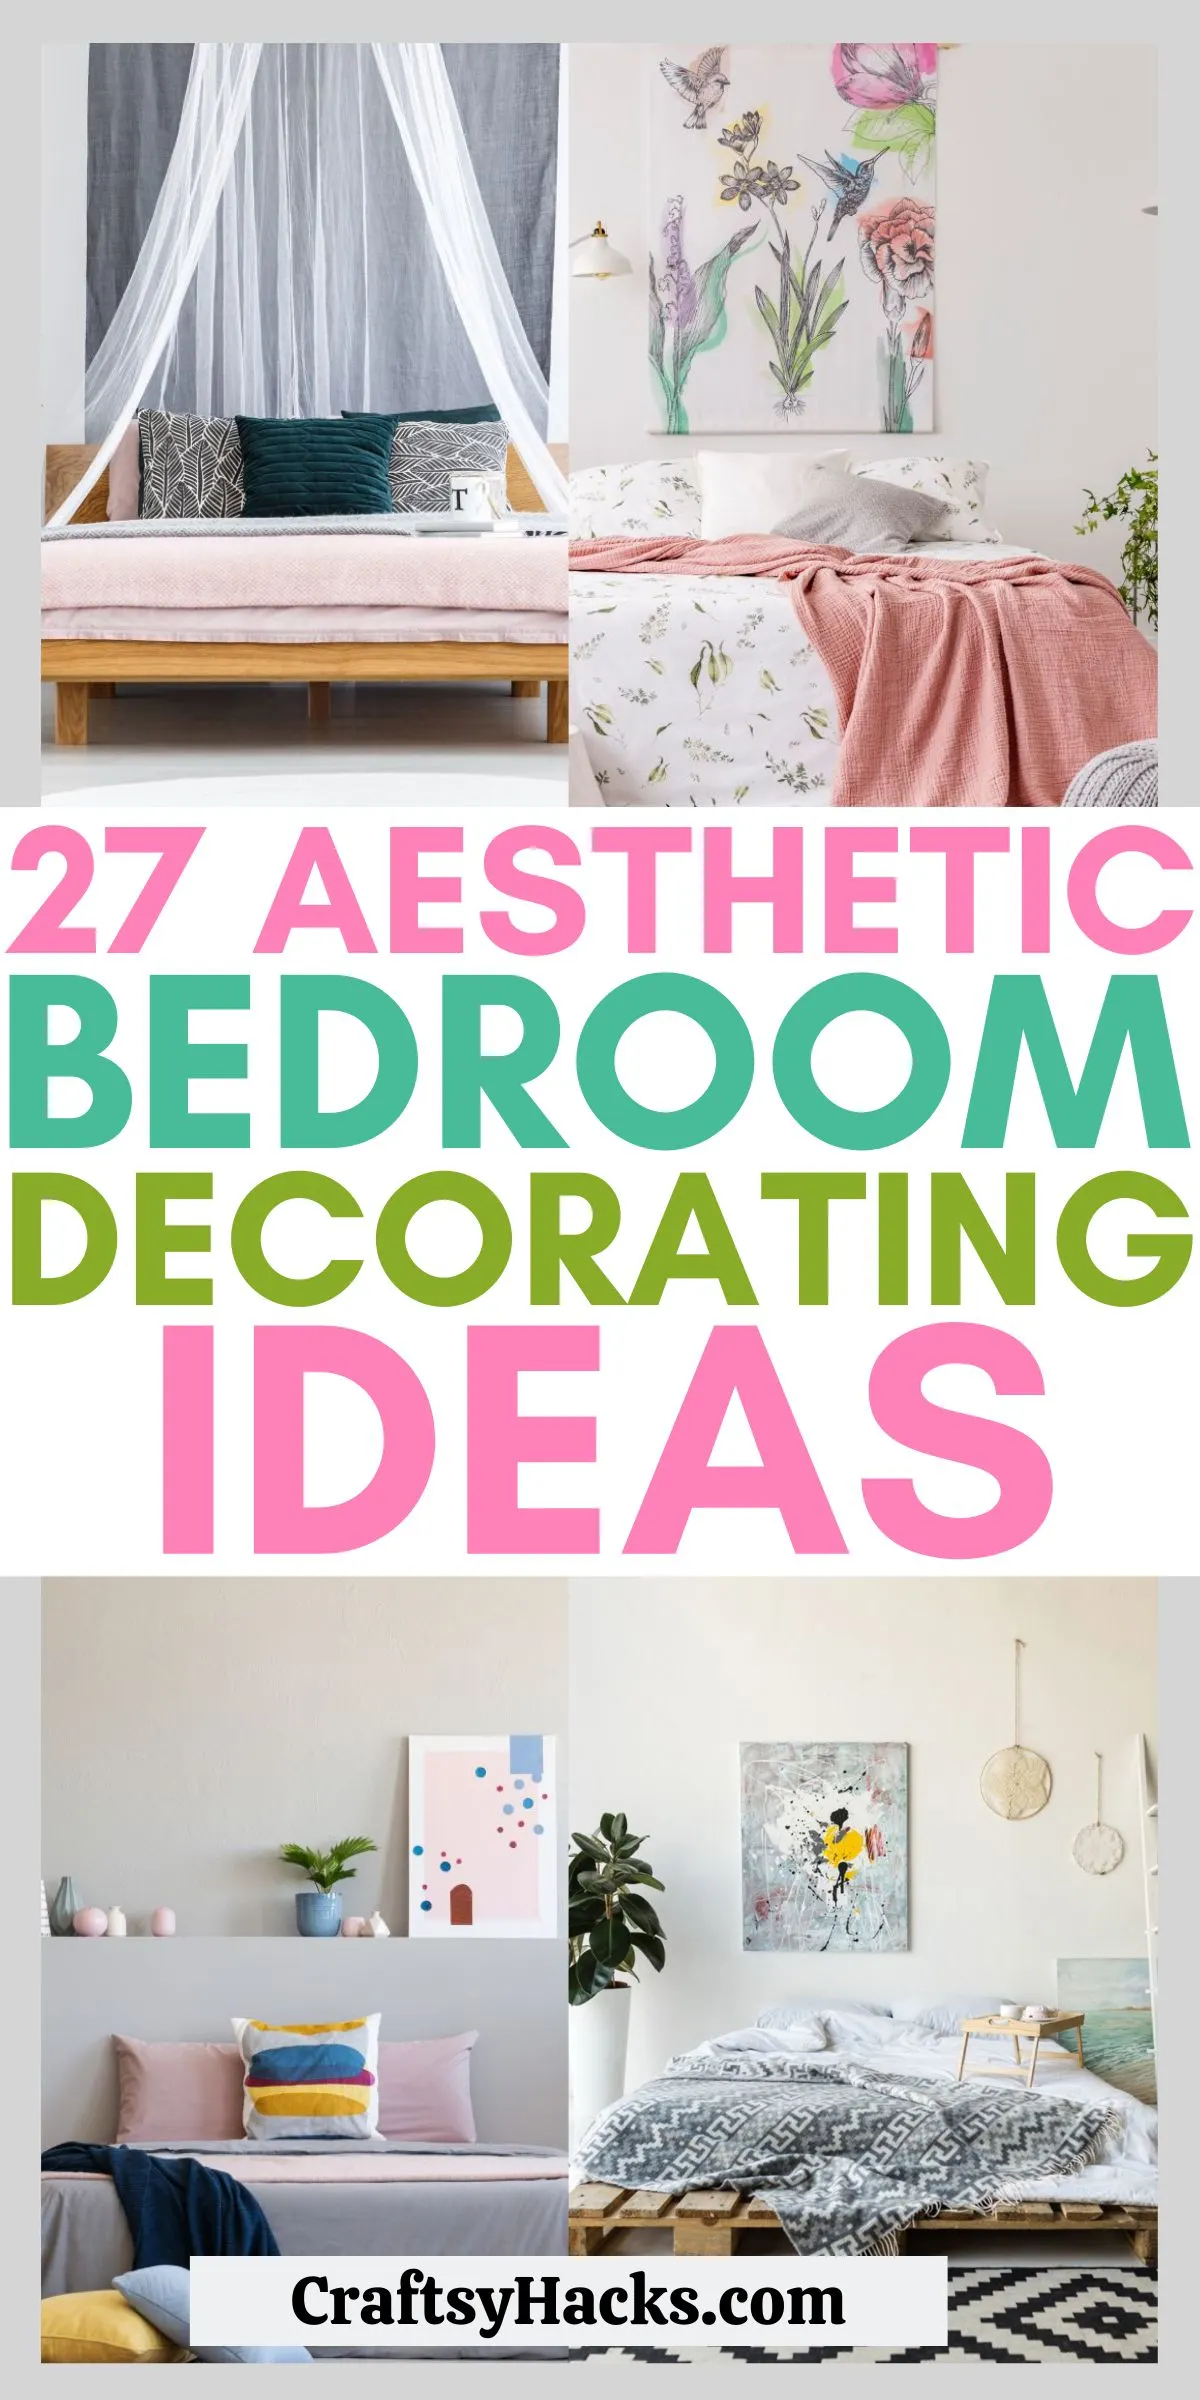 https://craftsyhacks.com/wp-content/uploads/2022/07/27-aesthetic-bedroom-ideas-1.jpg.webp